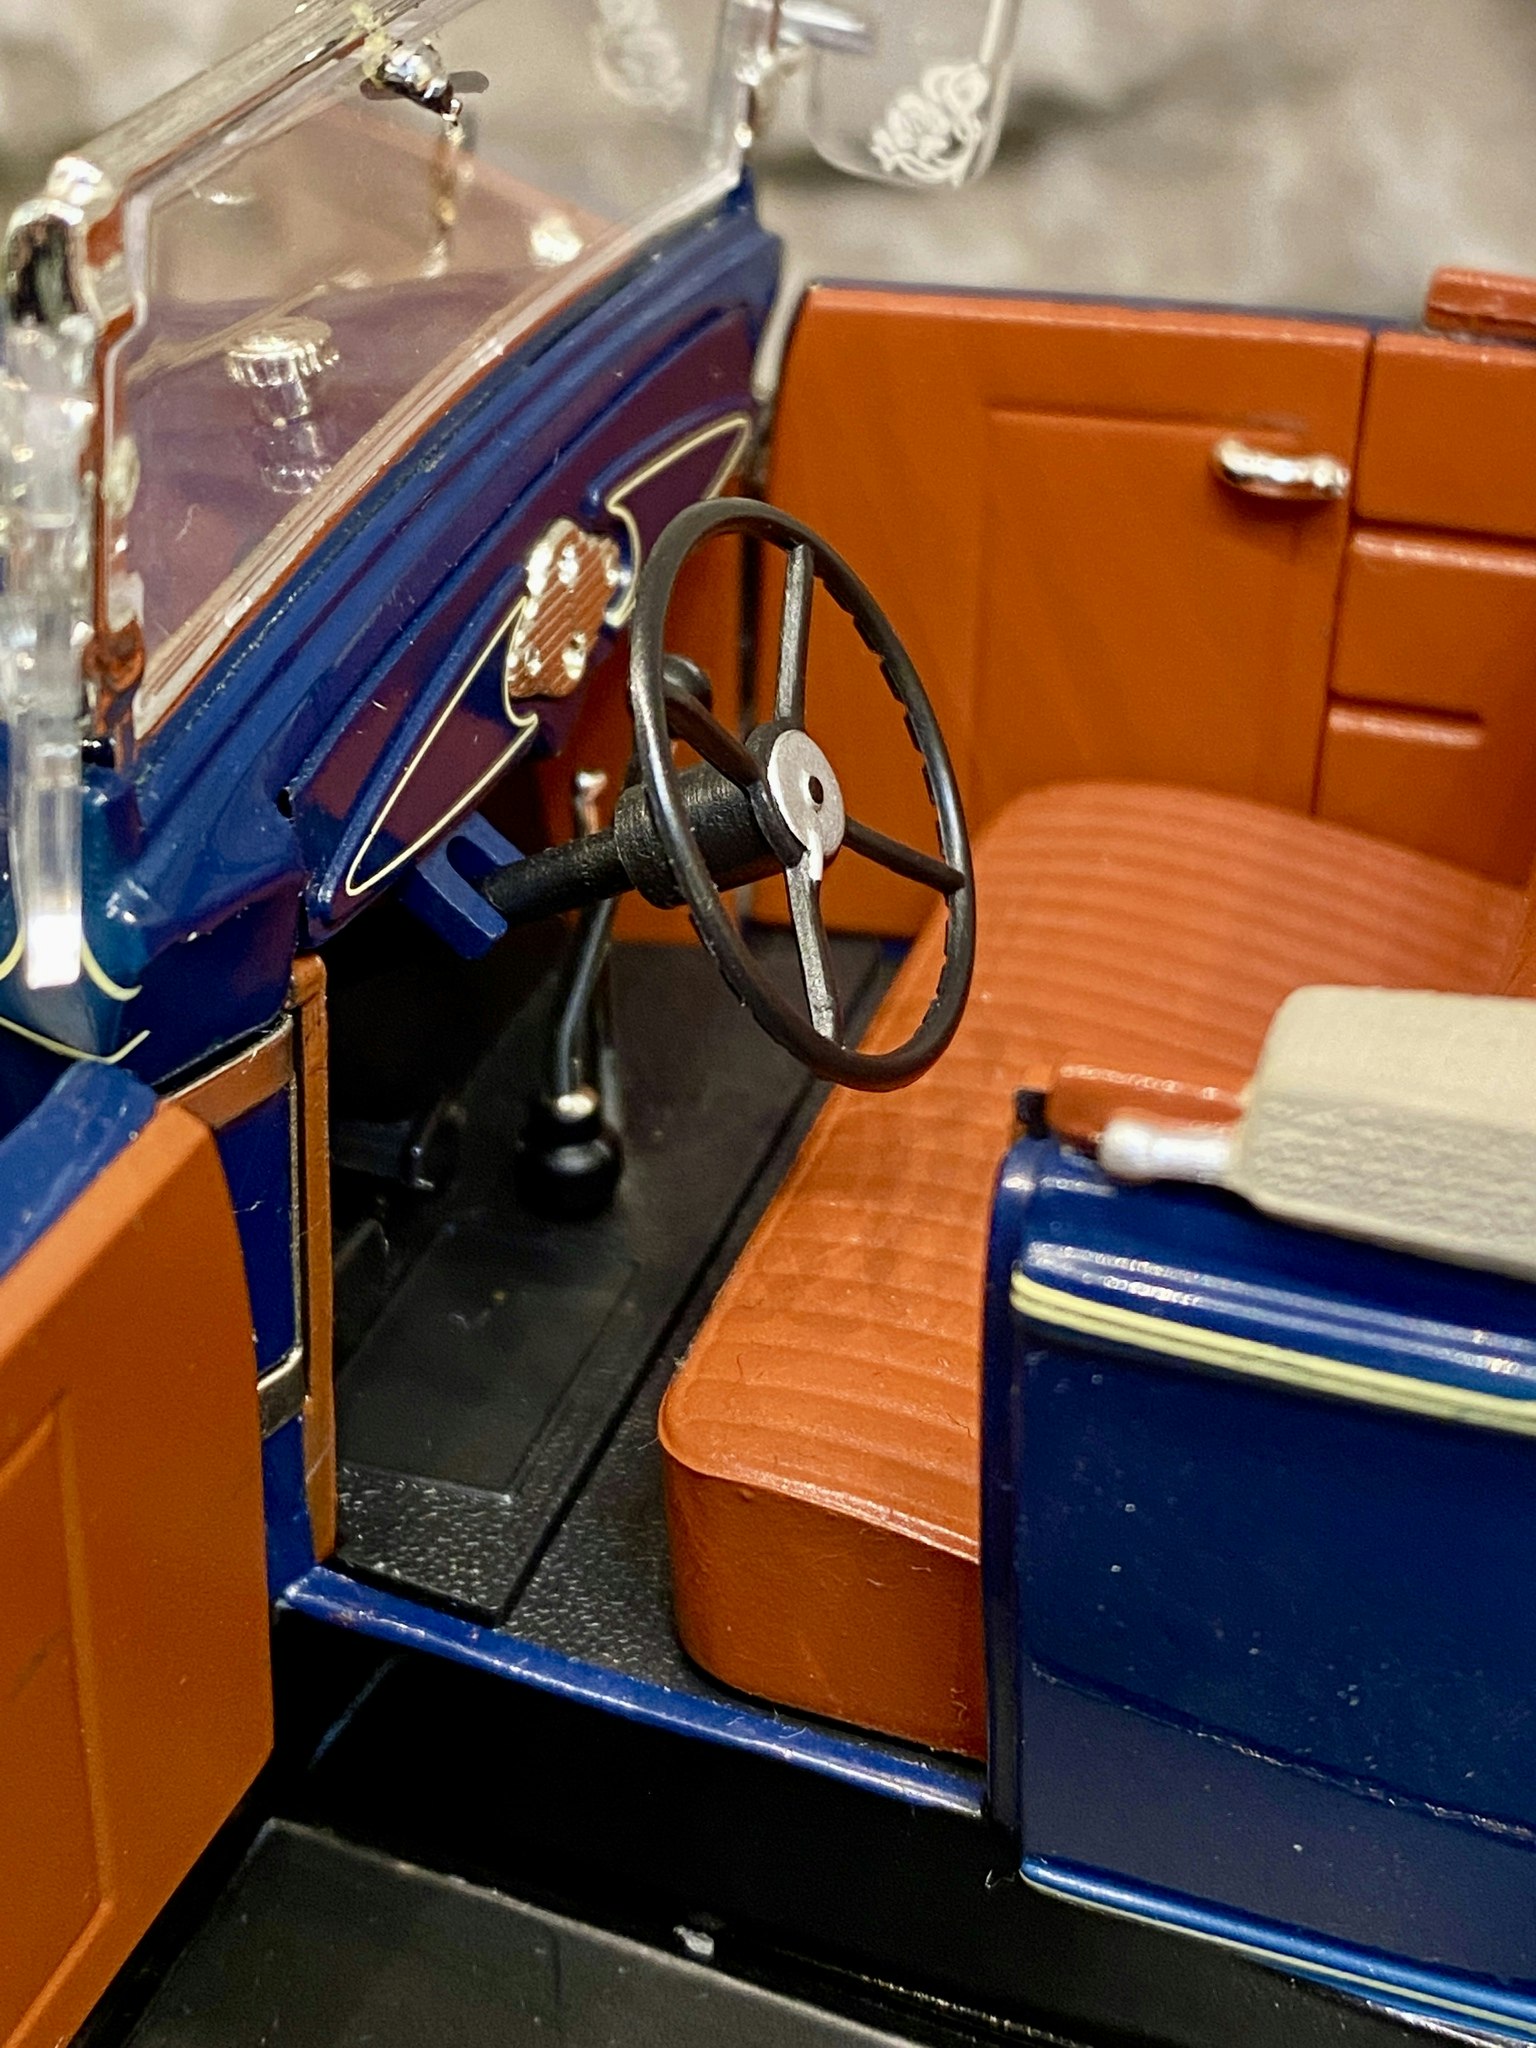 Skala 1/18 Otroligt välgjord Ford Modell A 1931, Blå fr Motor City Classics